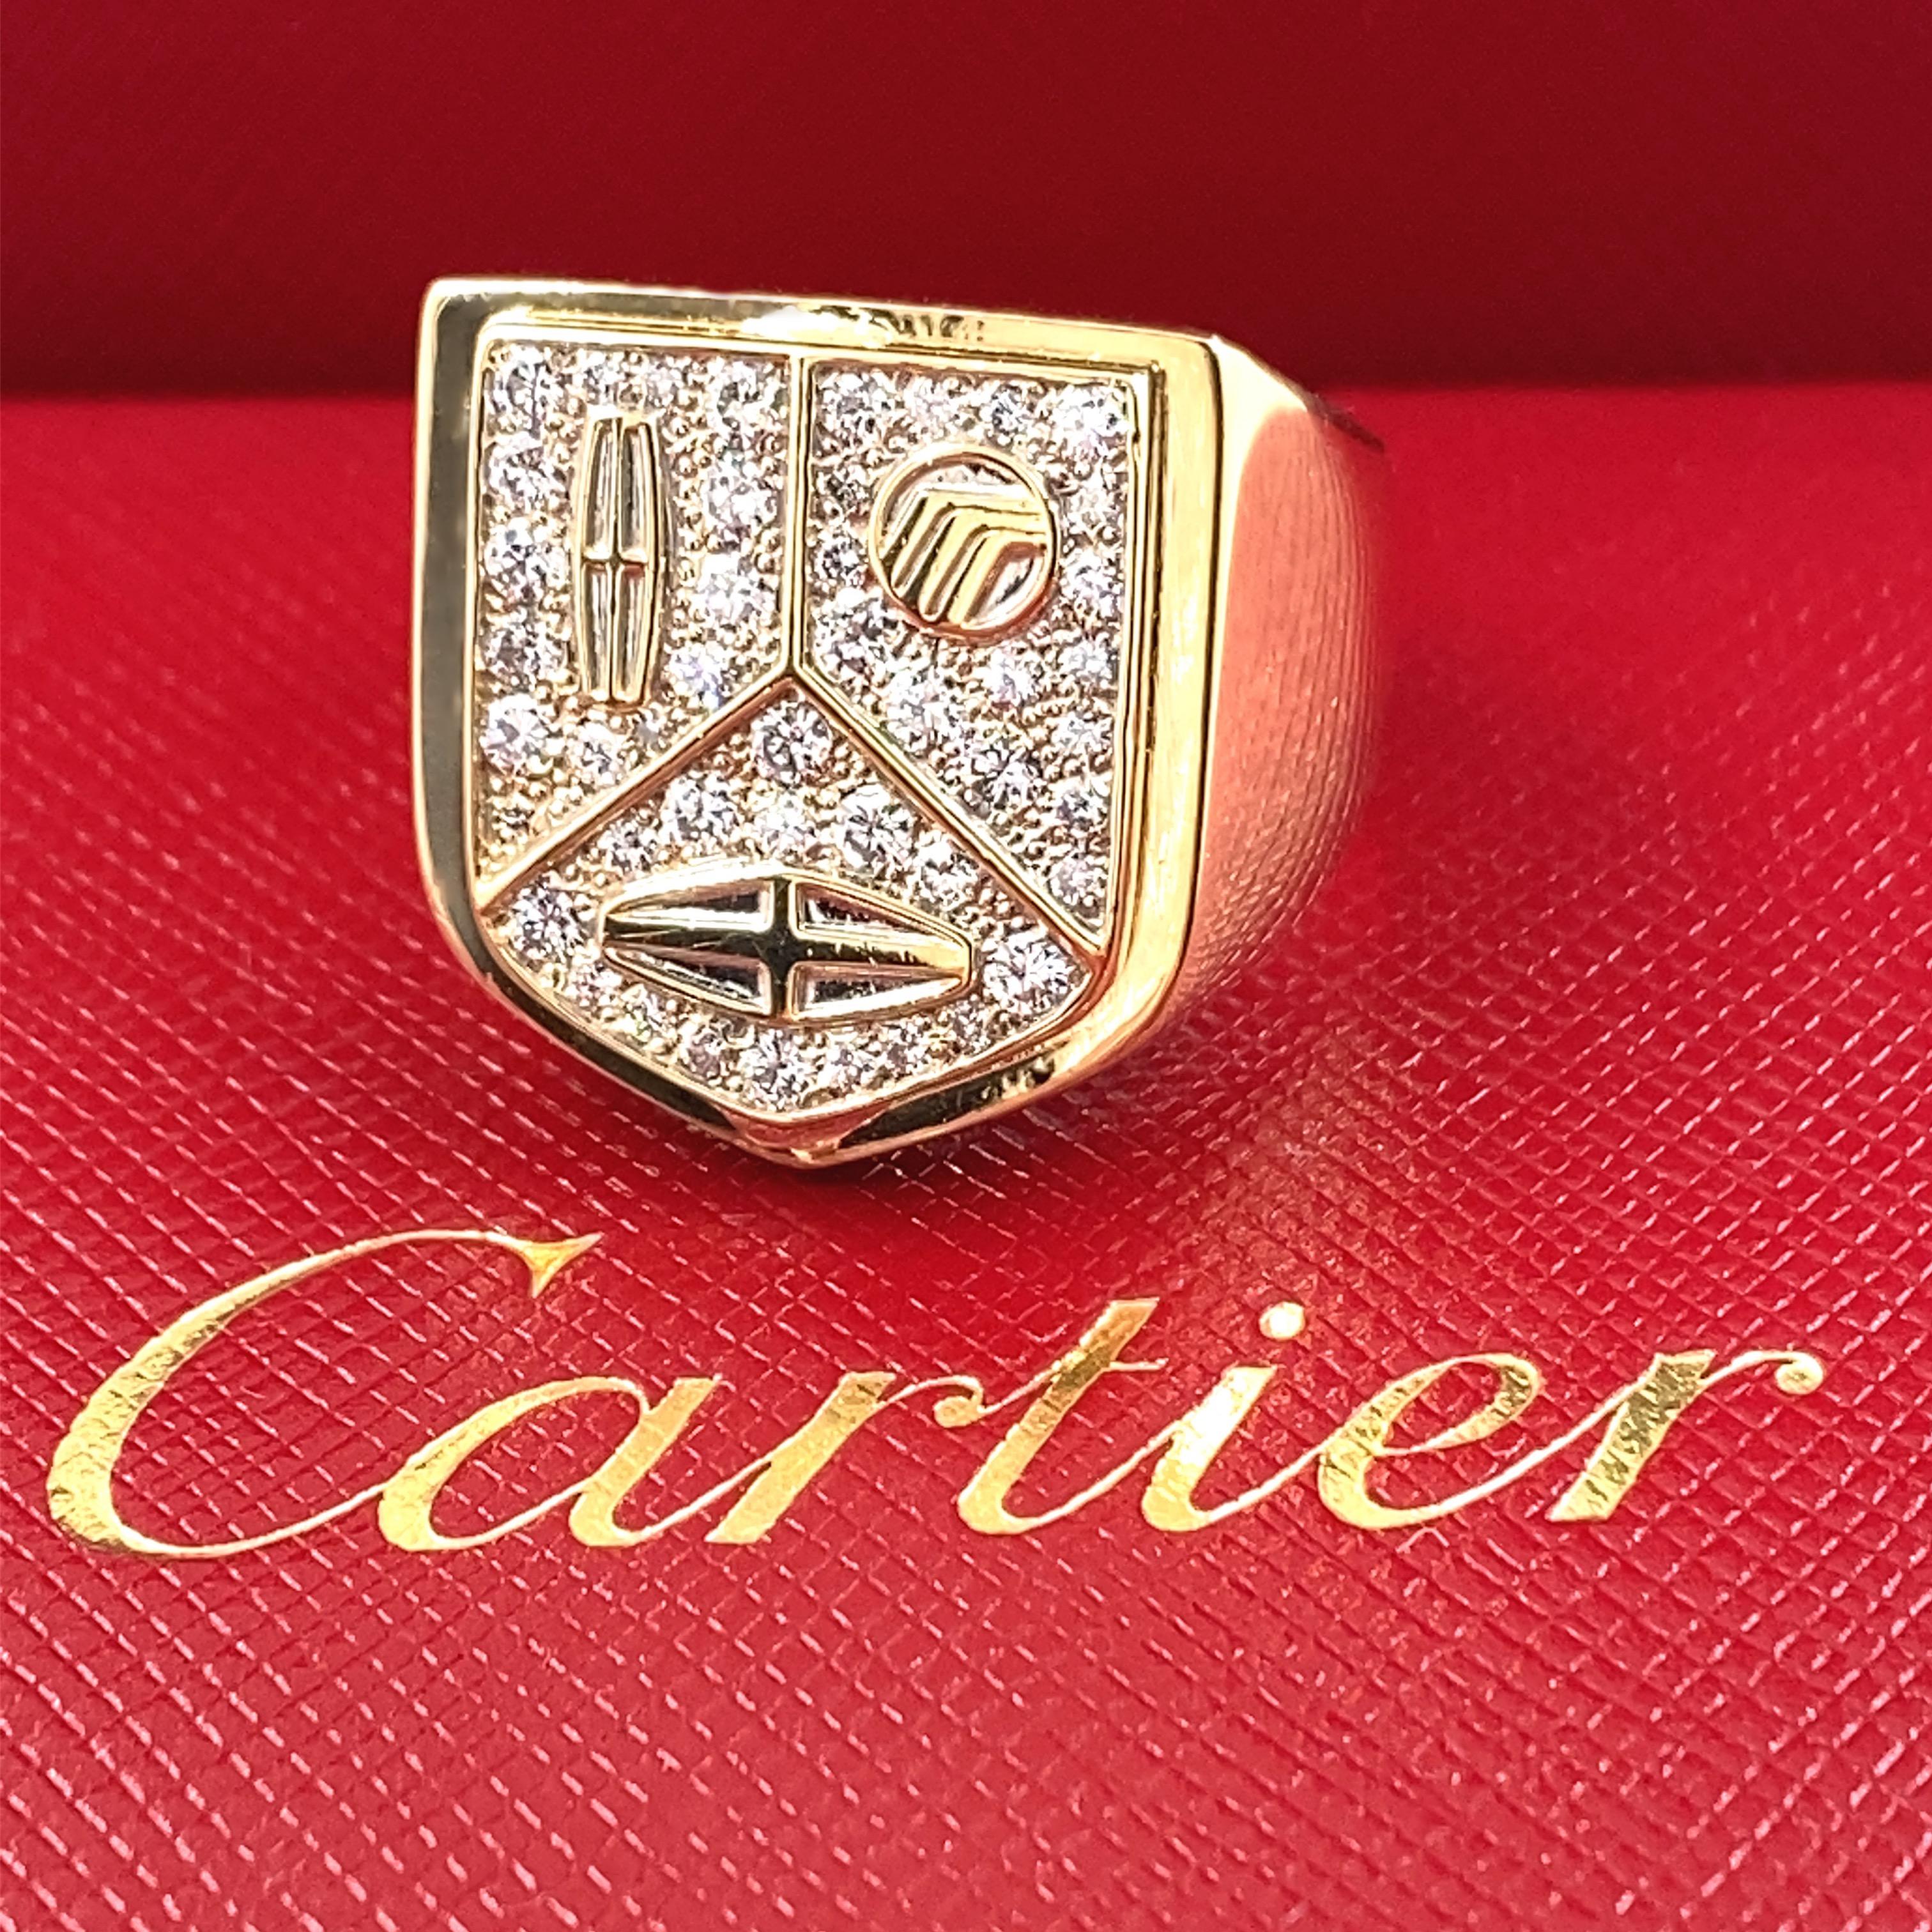 Vintage CIRCA 1985 Limitierte Auflage Cartier Lincoln Mercury Merkur Diamond Signet Ring
Stil:  Siegel
Metall:  18kt Gelbgold
Größe:  9,5 groß
TCW:  0,70 tcw
Hauptdiamant:  44 runde Brillanten 0,70 tcw
Farbe & Klarheit:  E - F, VS1 -